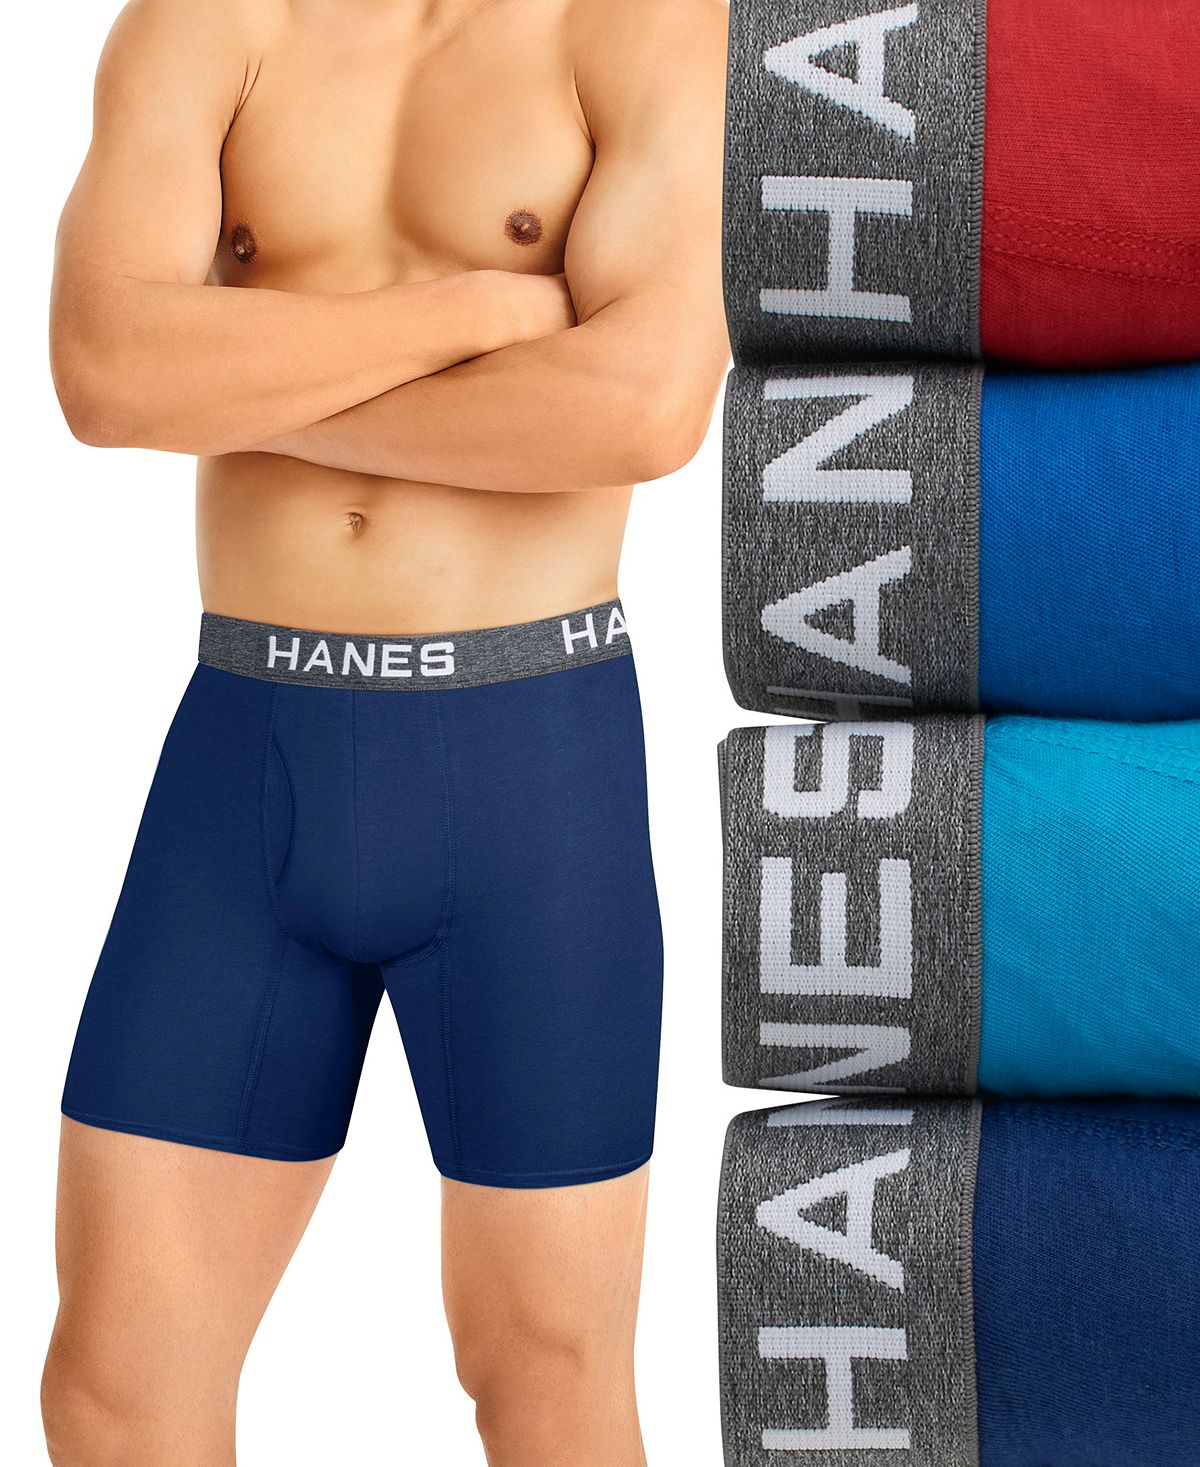 Мужские шорты Ultimate ComfortFlex Fit, 4 шт. Трусы-боксеры из влагоотводящей сетки Hanes